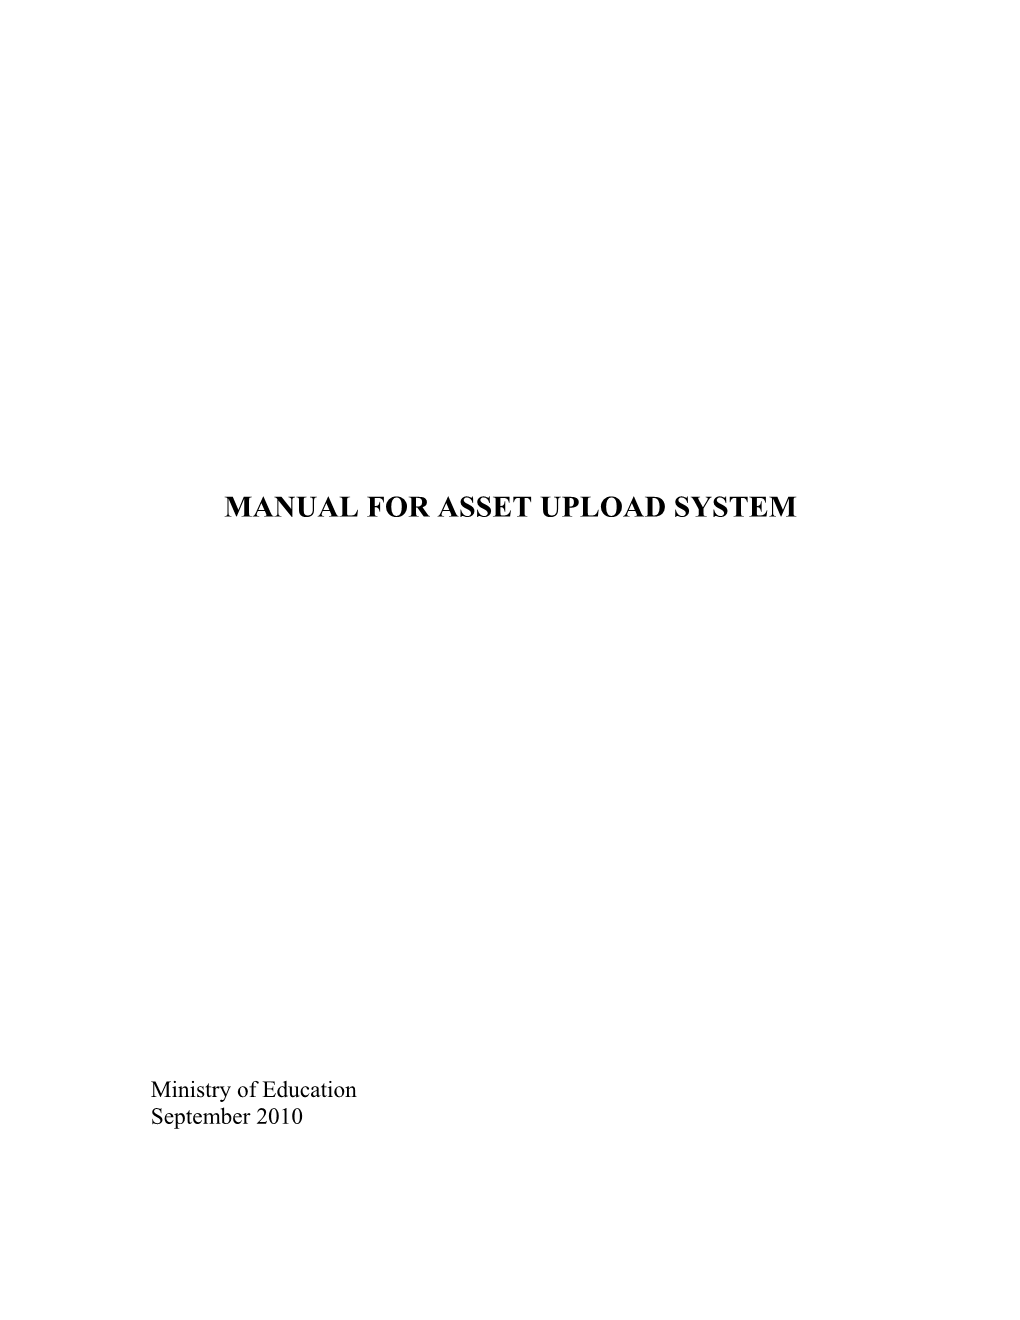 Manual for Asset Upload System